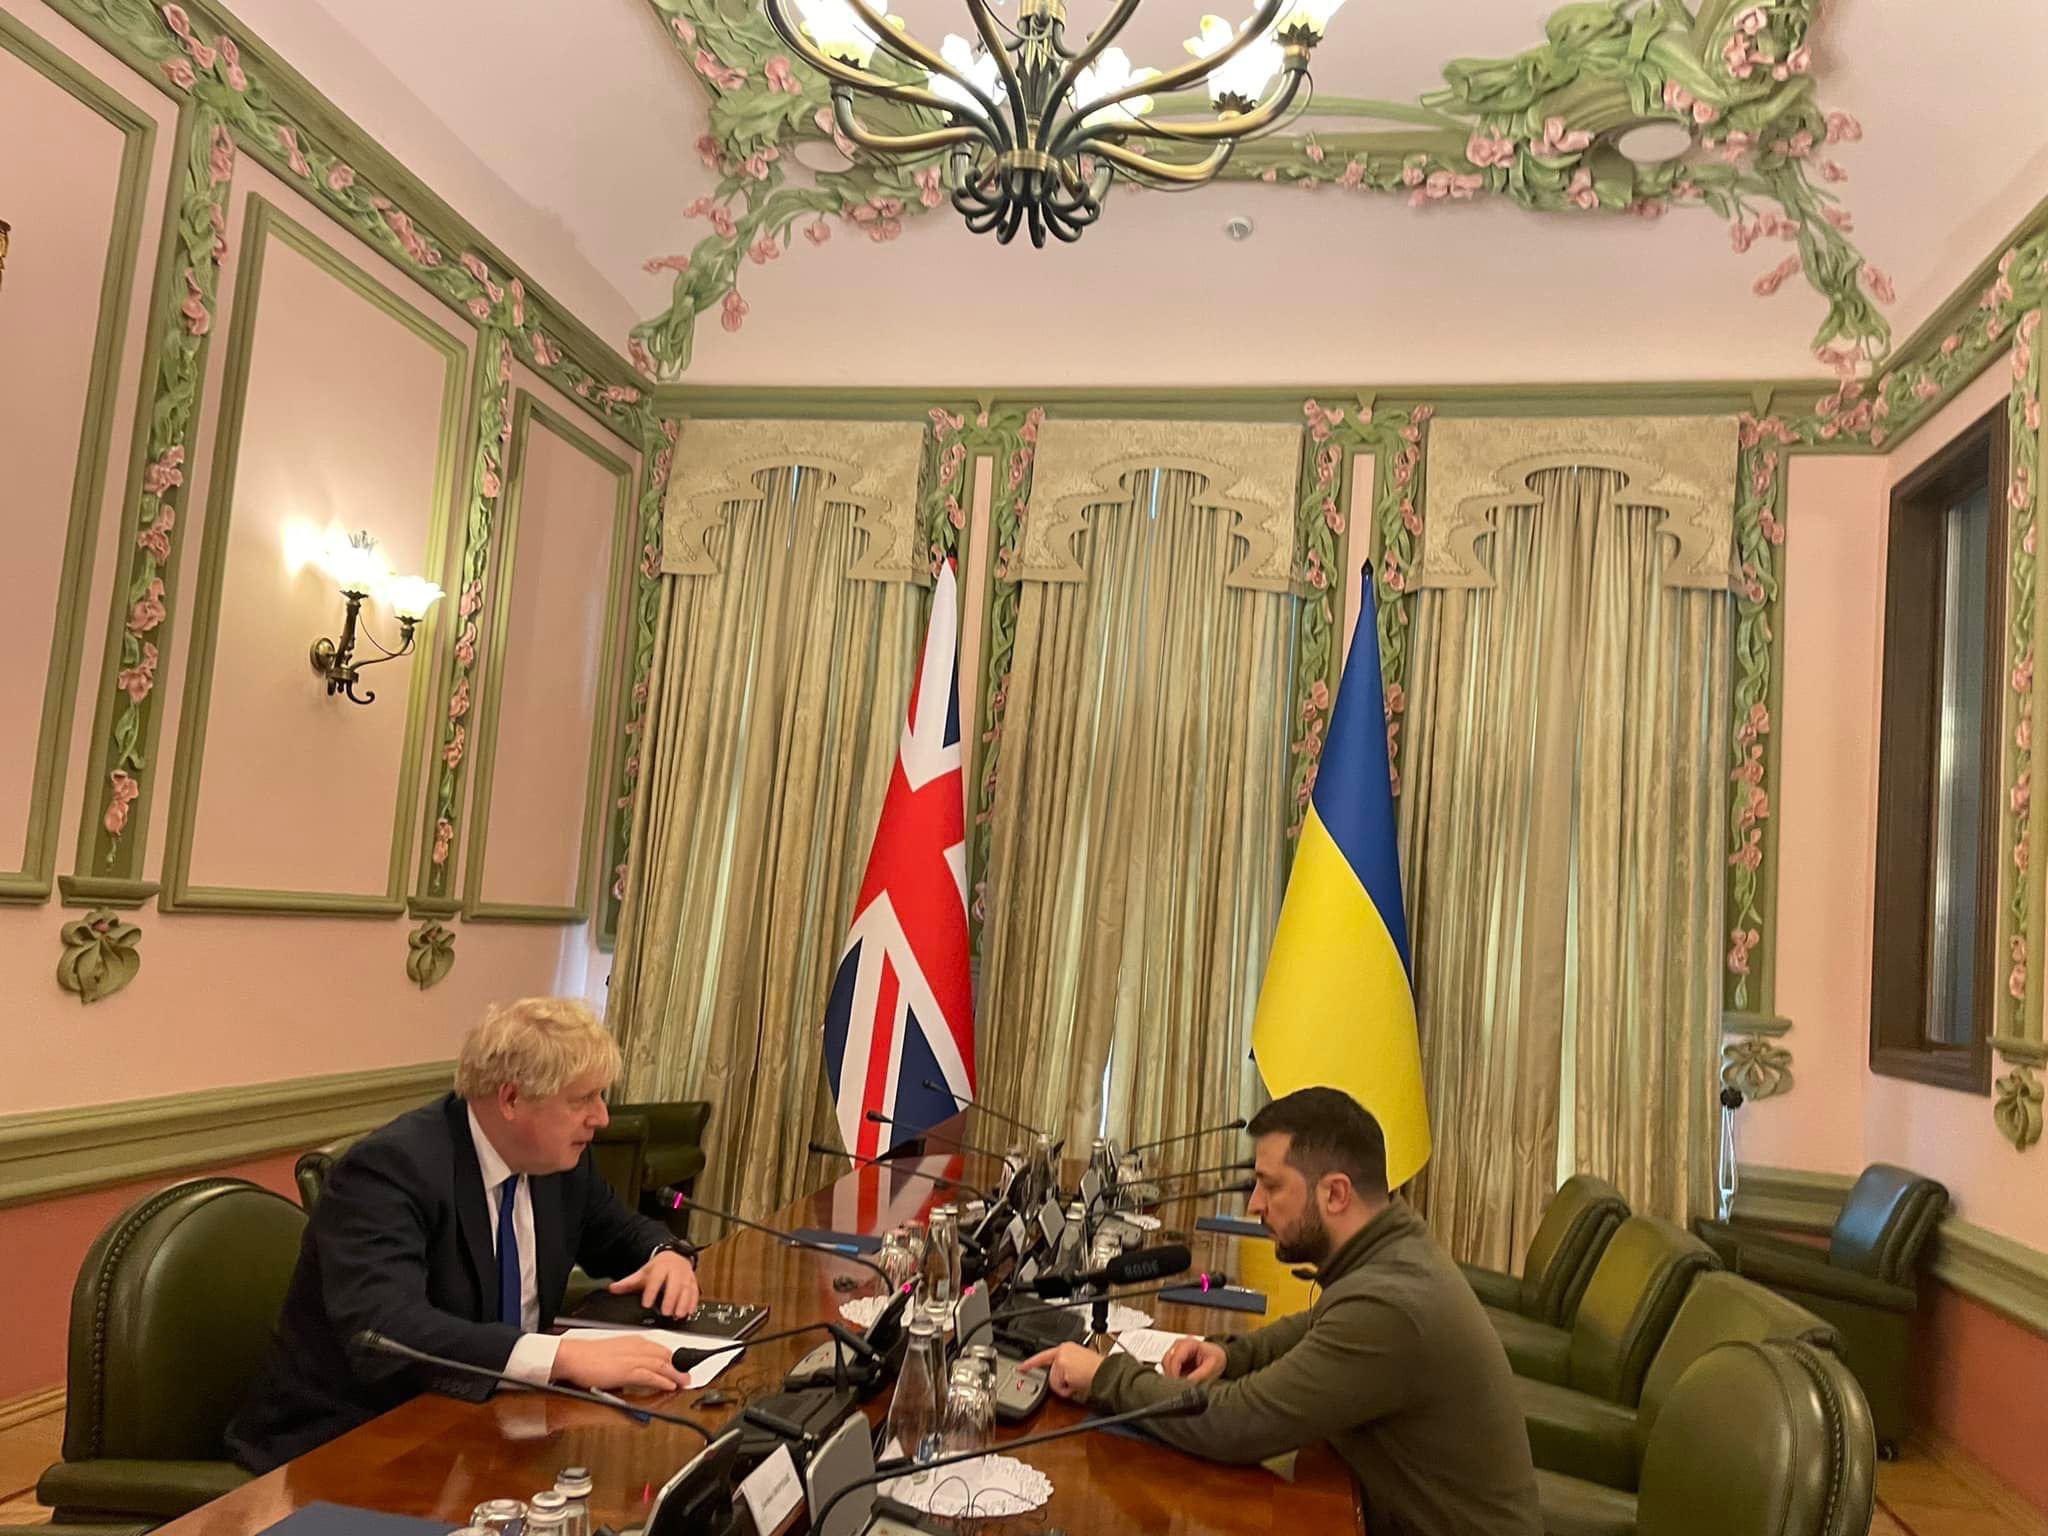 NÓNG: Thủ tướng Anh bất ngờ thăm Ukraine - ảnh 1